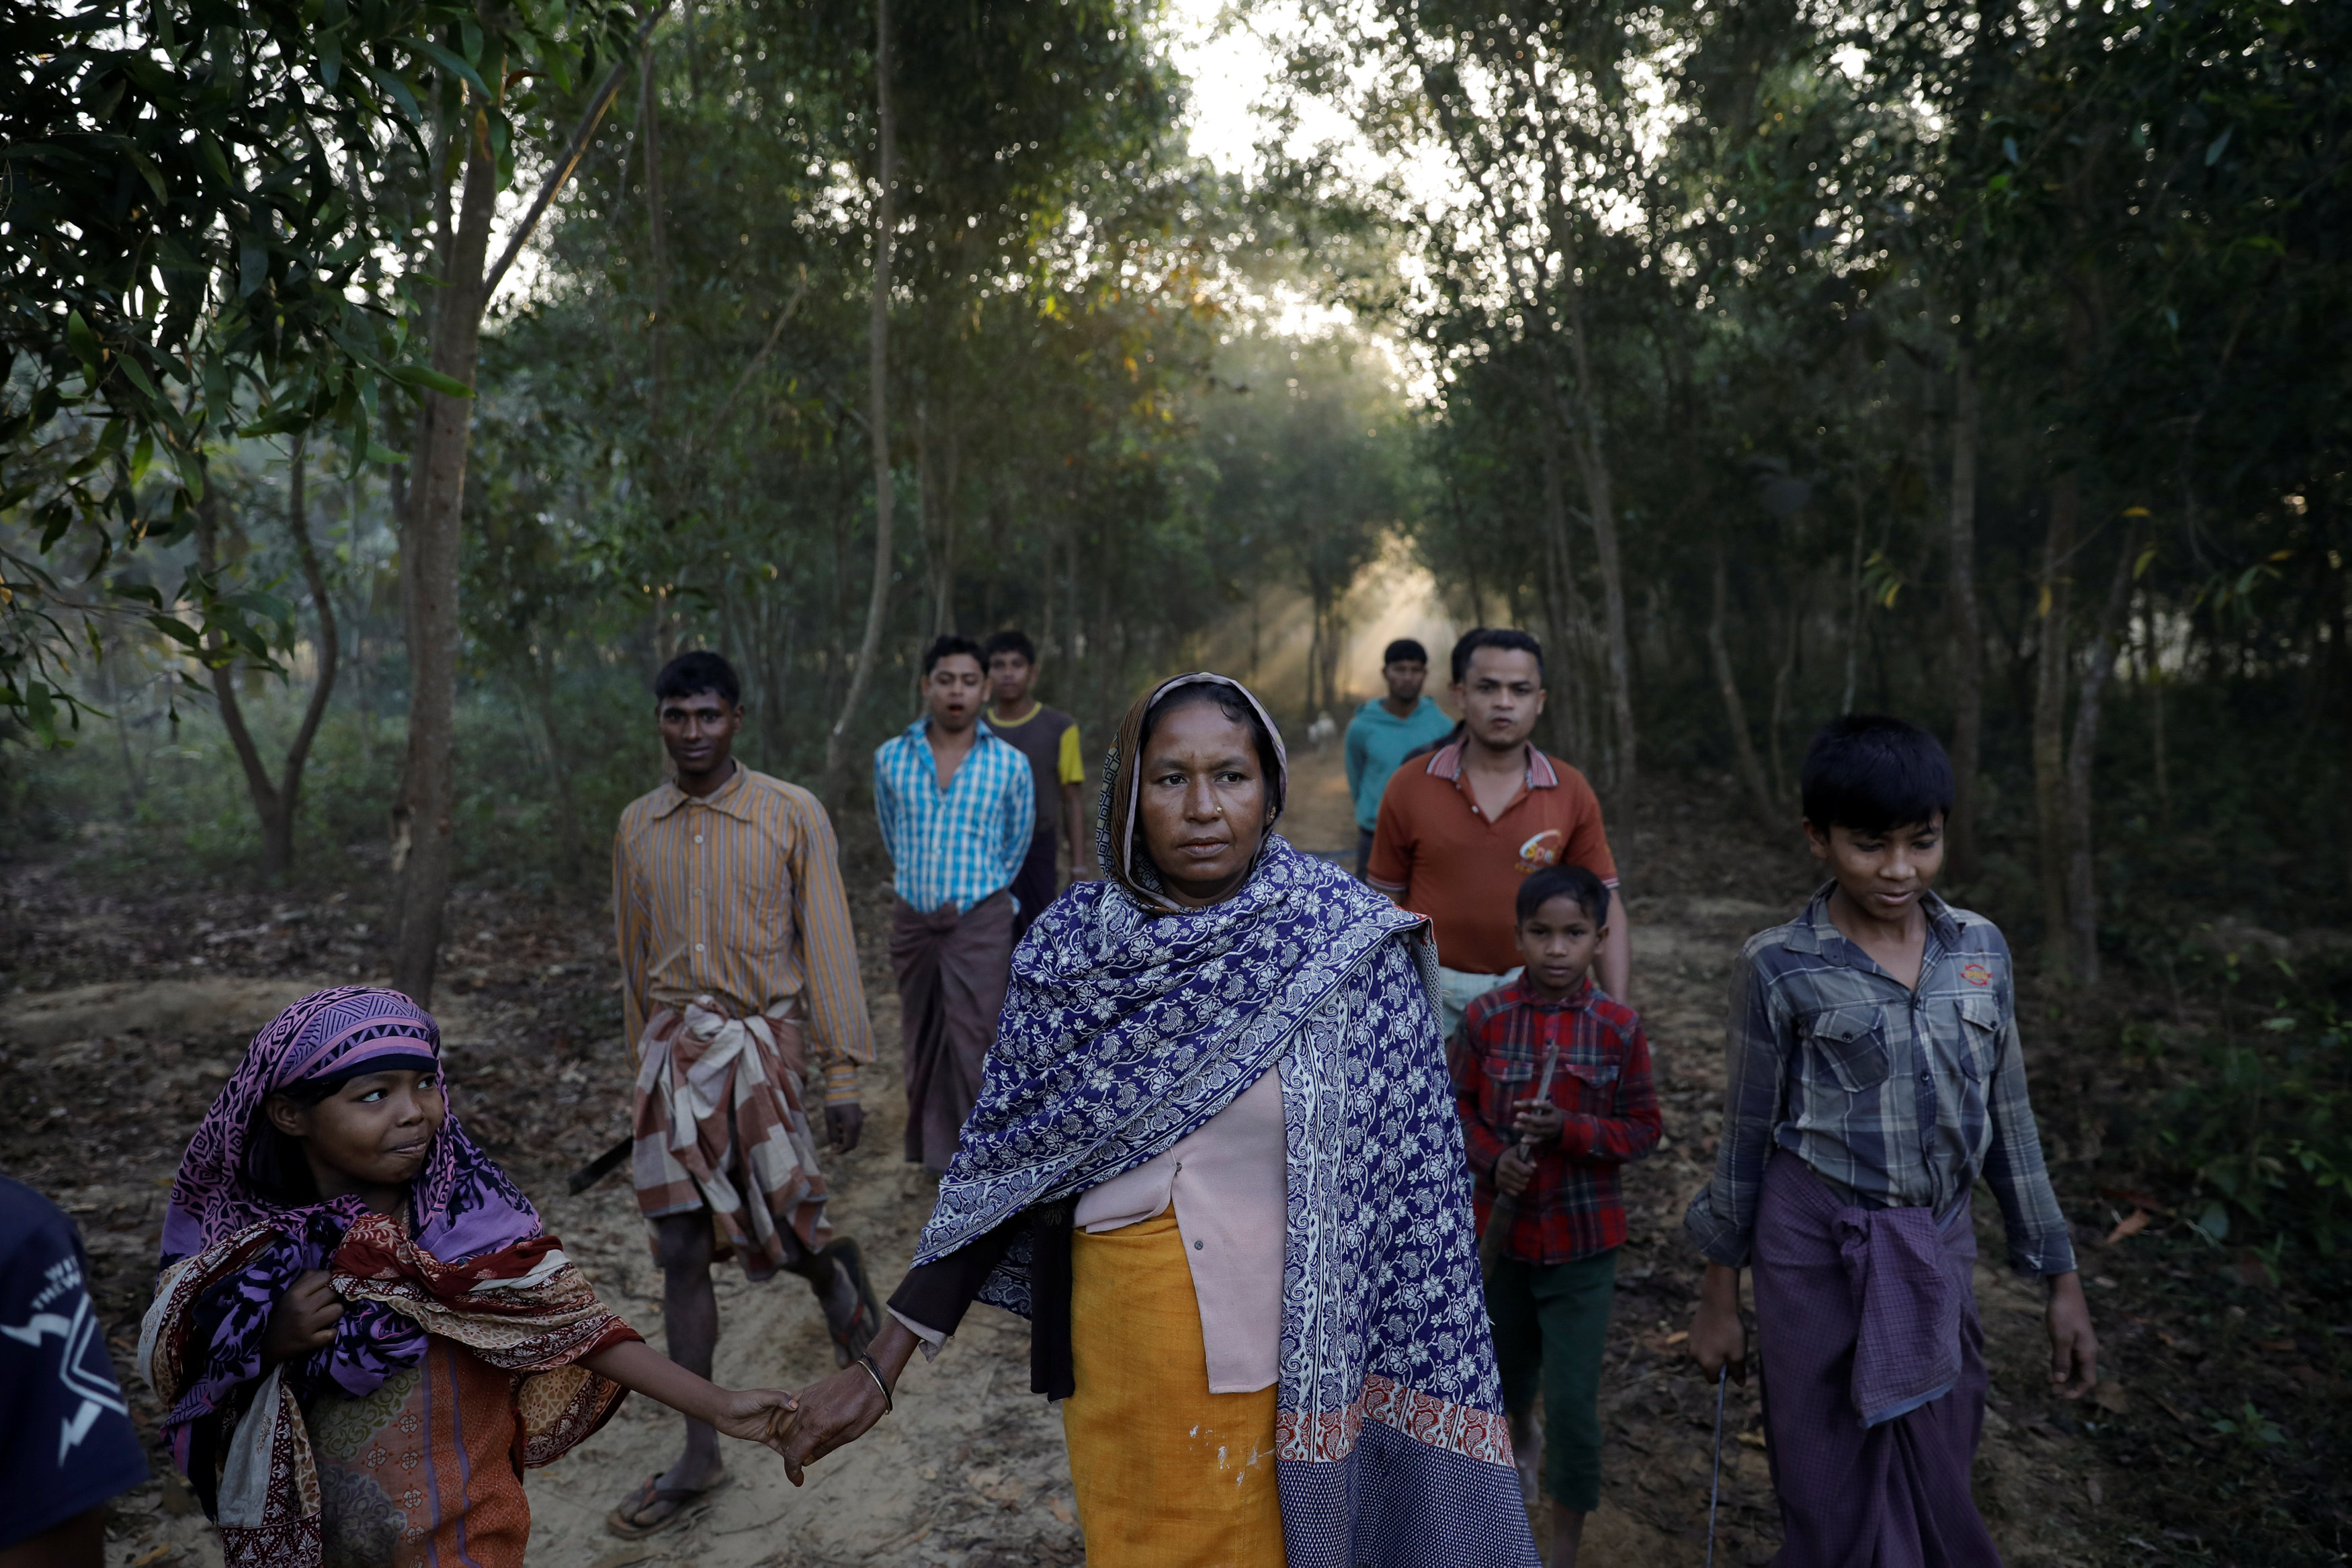 ΟΗΕ: Προτροπή τερματισμού επιθέσεων εναντίον των Ροχίνγκια